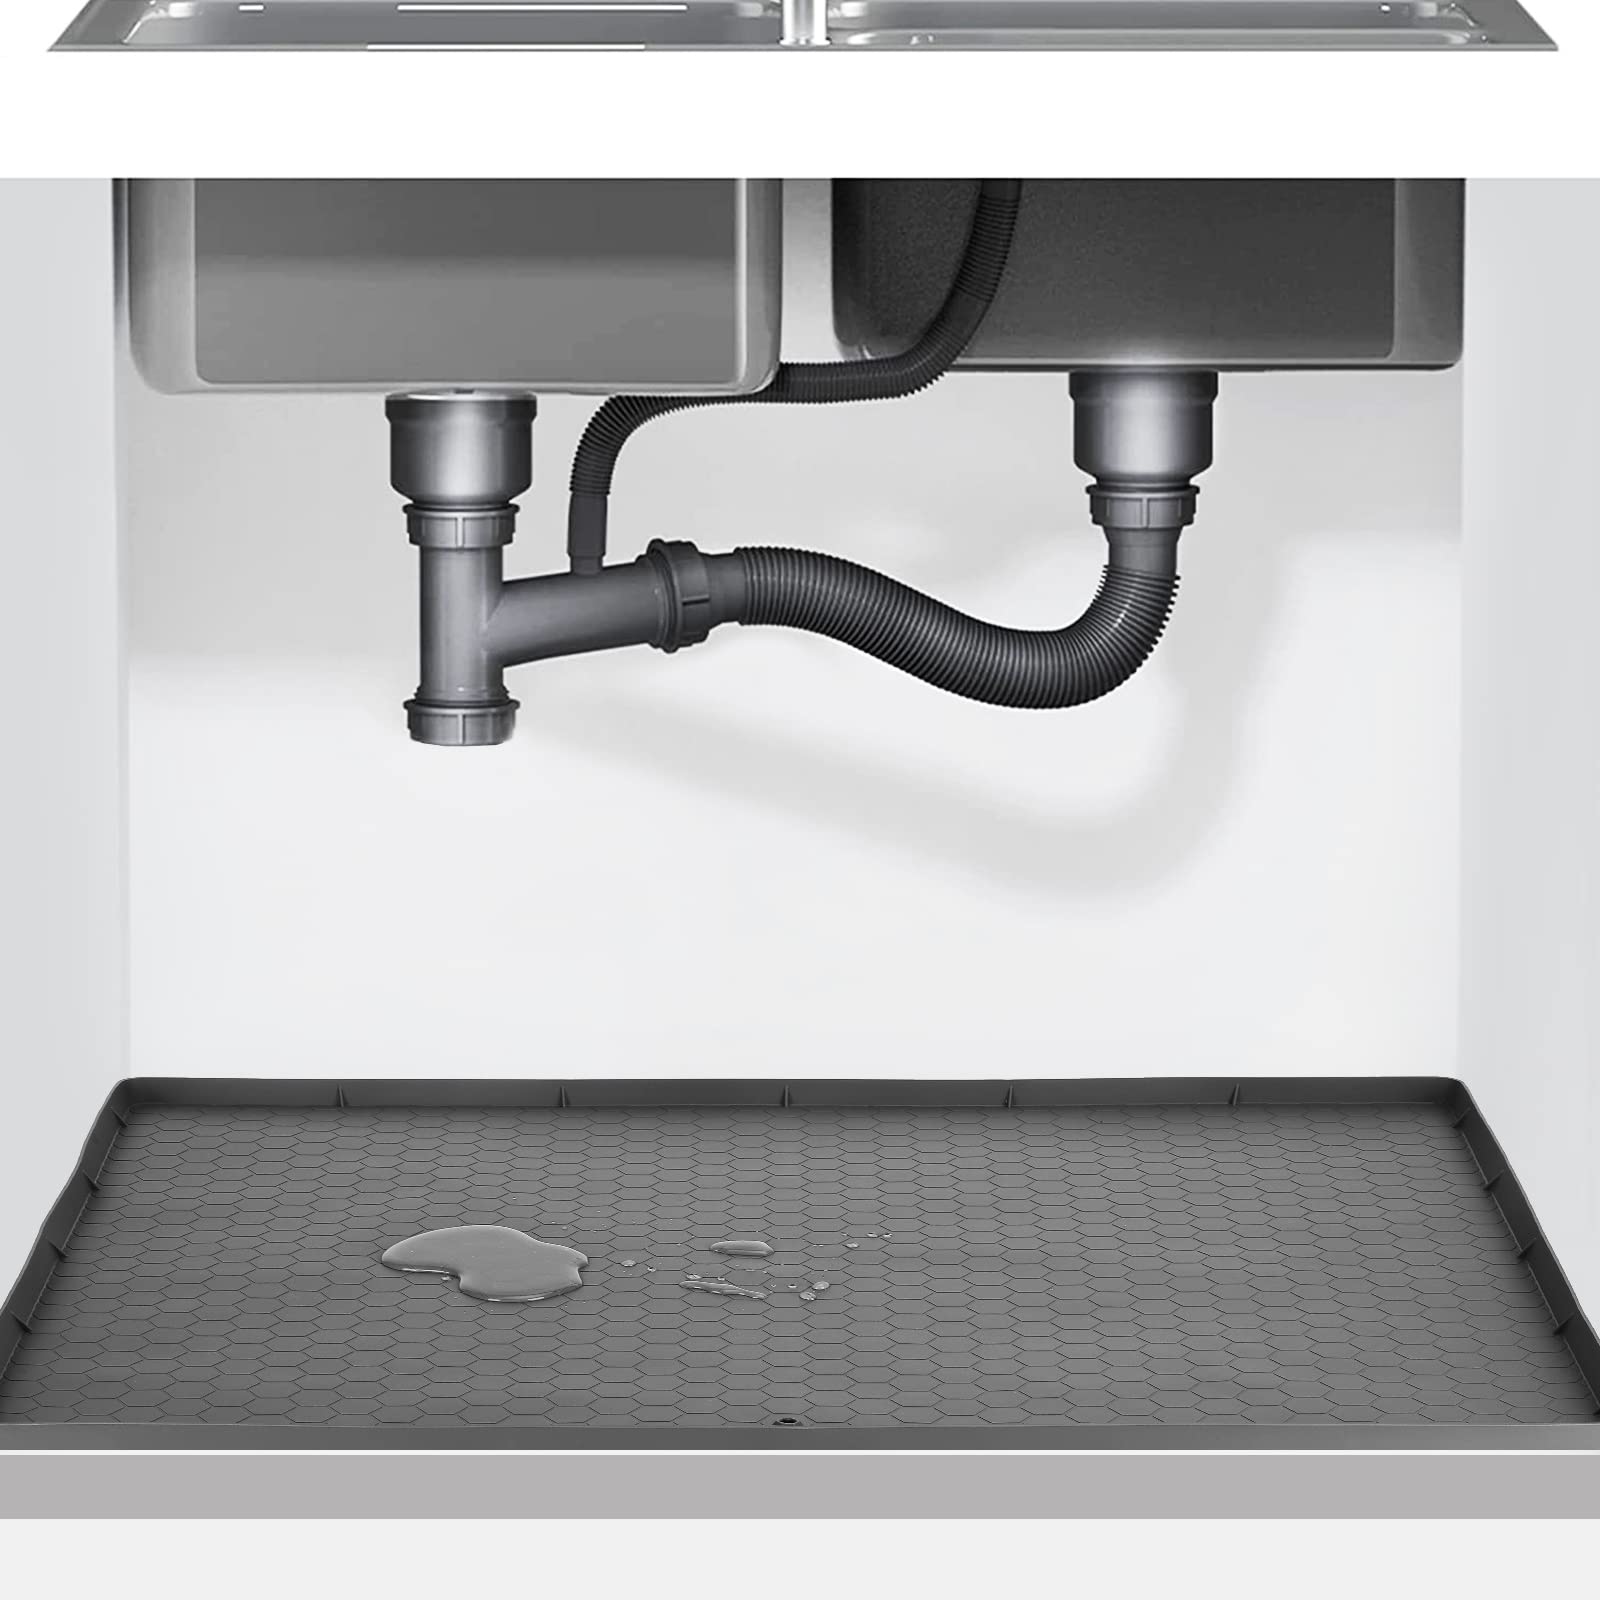 Under Sink Mats for Kitchen Waterproof, 28" x 22" Under Sink Tray for Kitchen Waterproof Waterproof & Flexible Under Sink Liner for Kitchen and Bathroom Gray